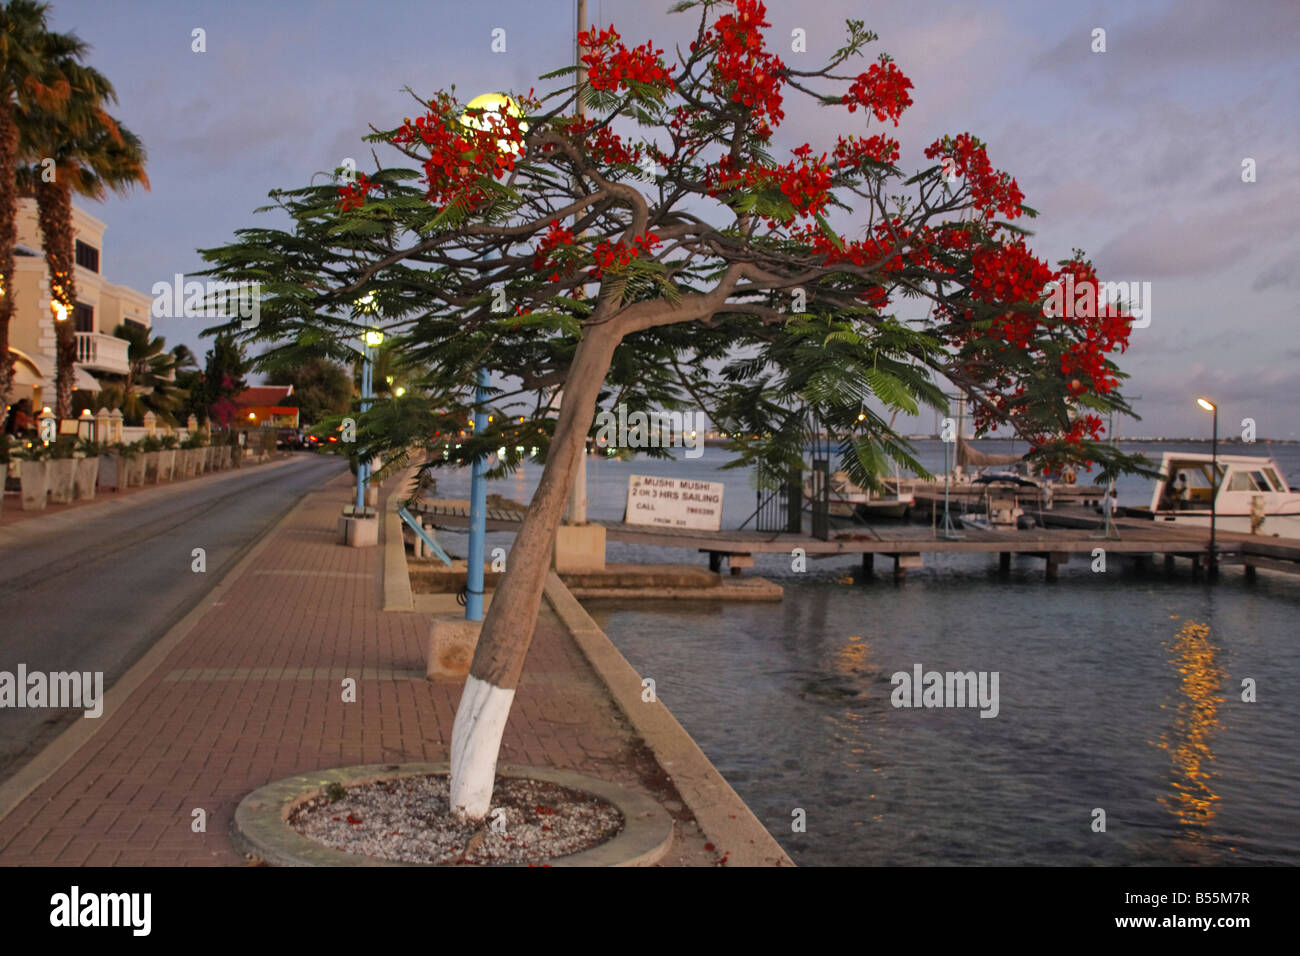 Antillen Bonaire Kralendijk Promenade Flamme Baum Stockfoto